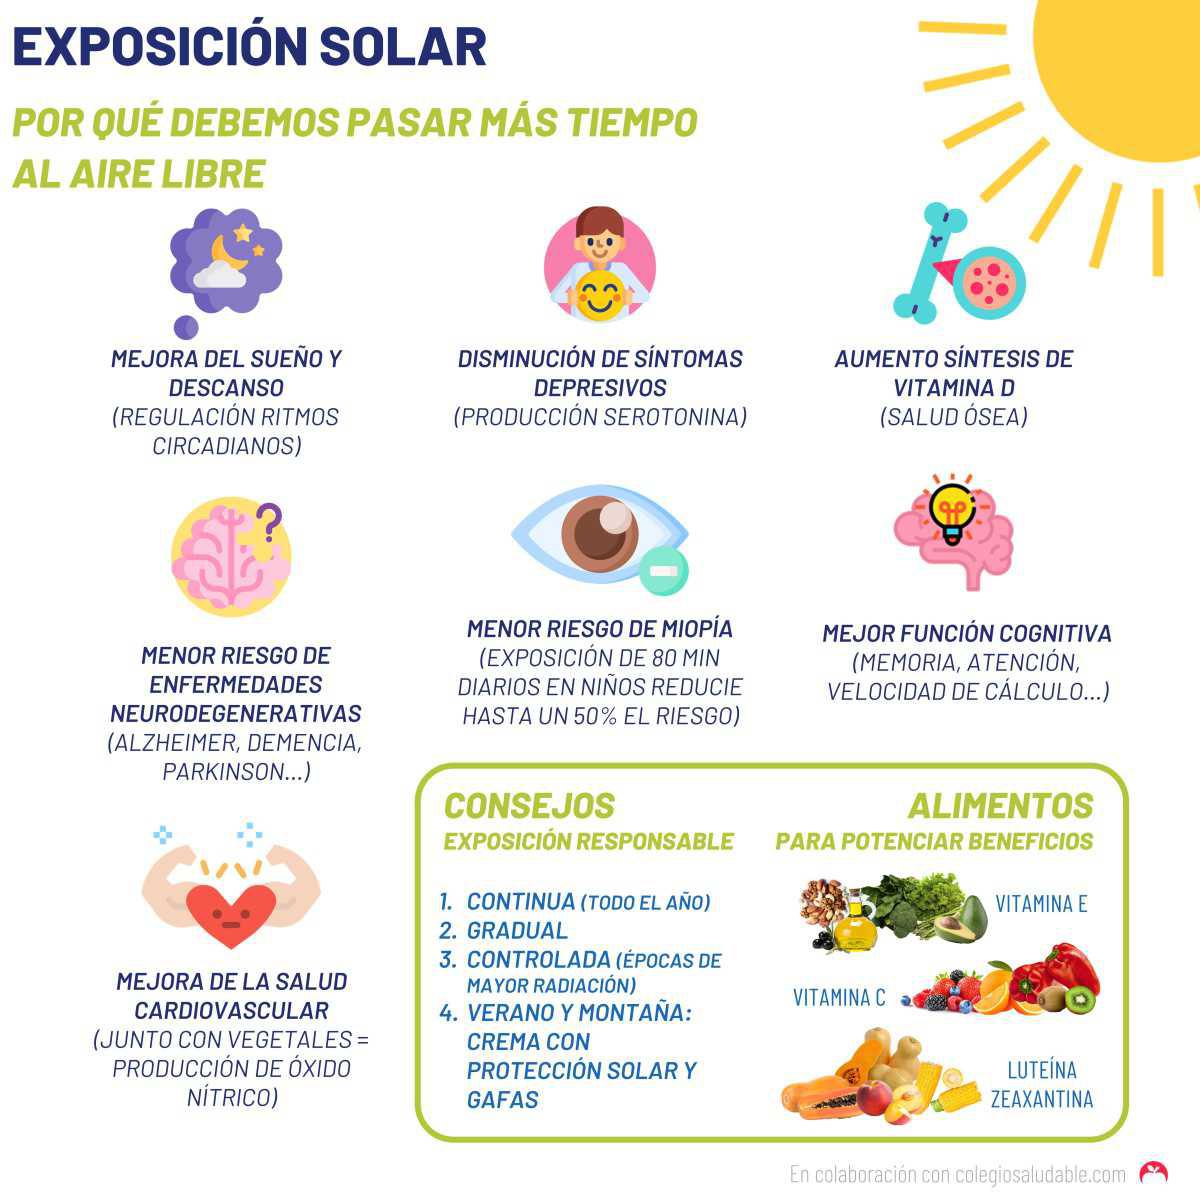 Exposición solar: beneficios 